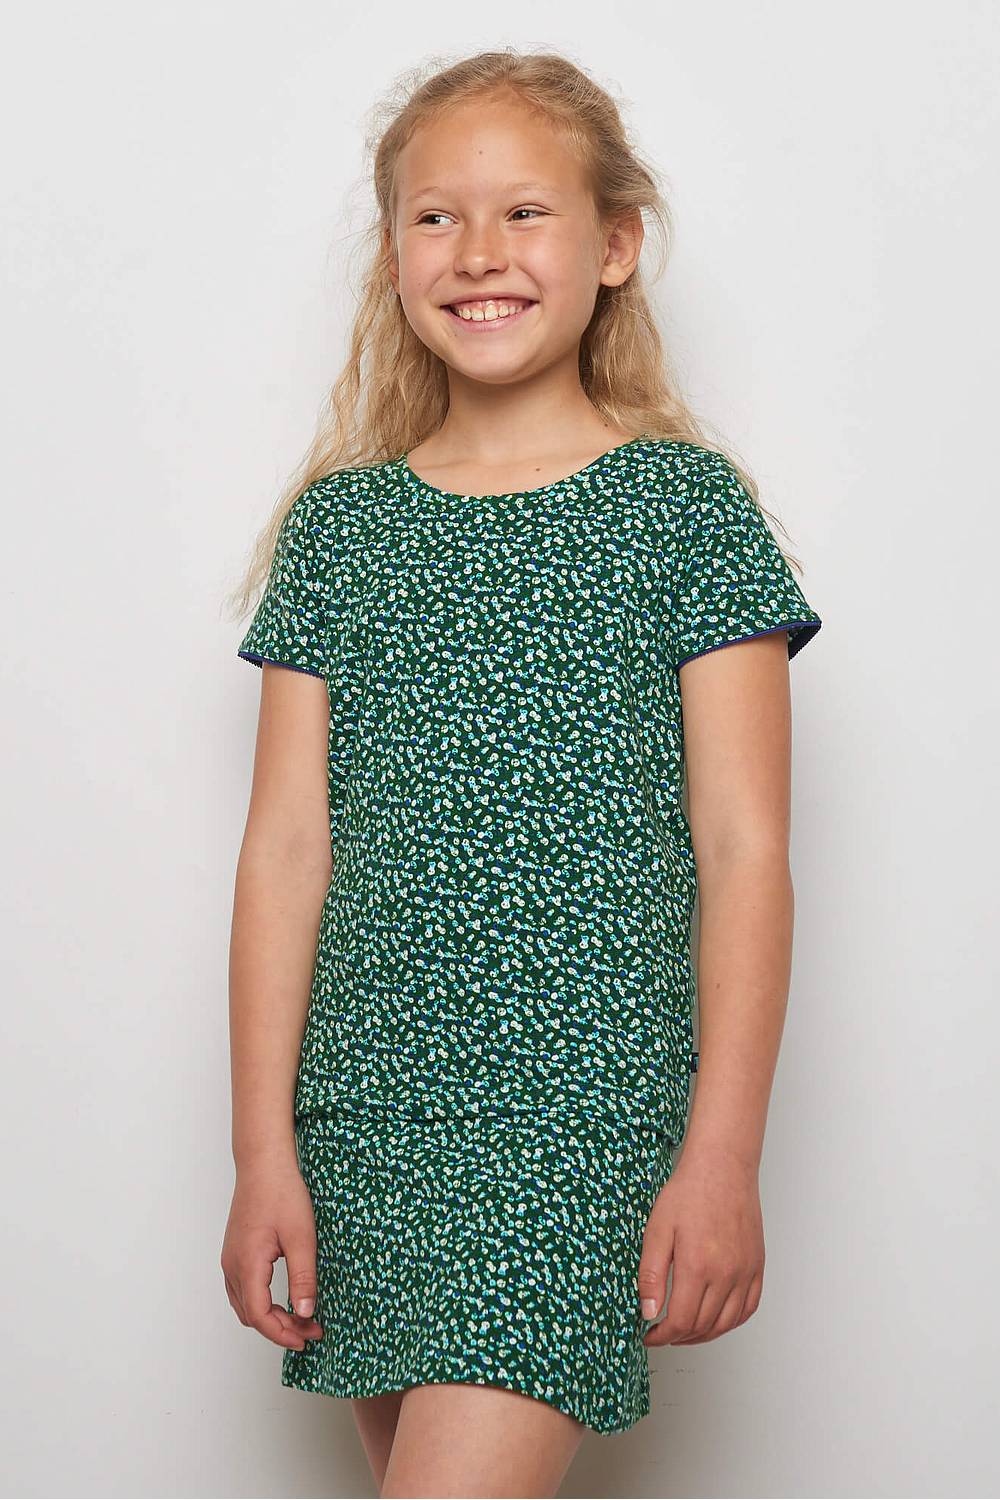 Kids Jersey-Shirt Lilly Green Peas (Gots) 128/134